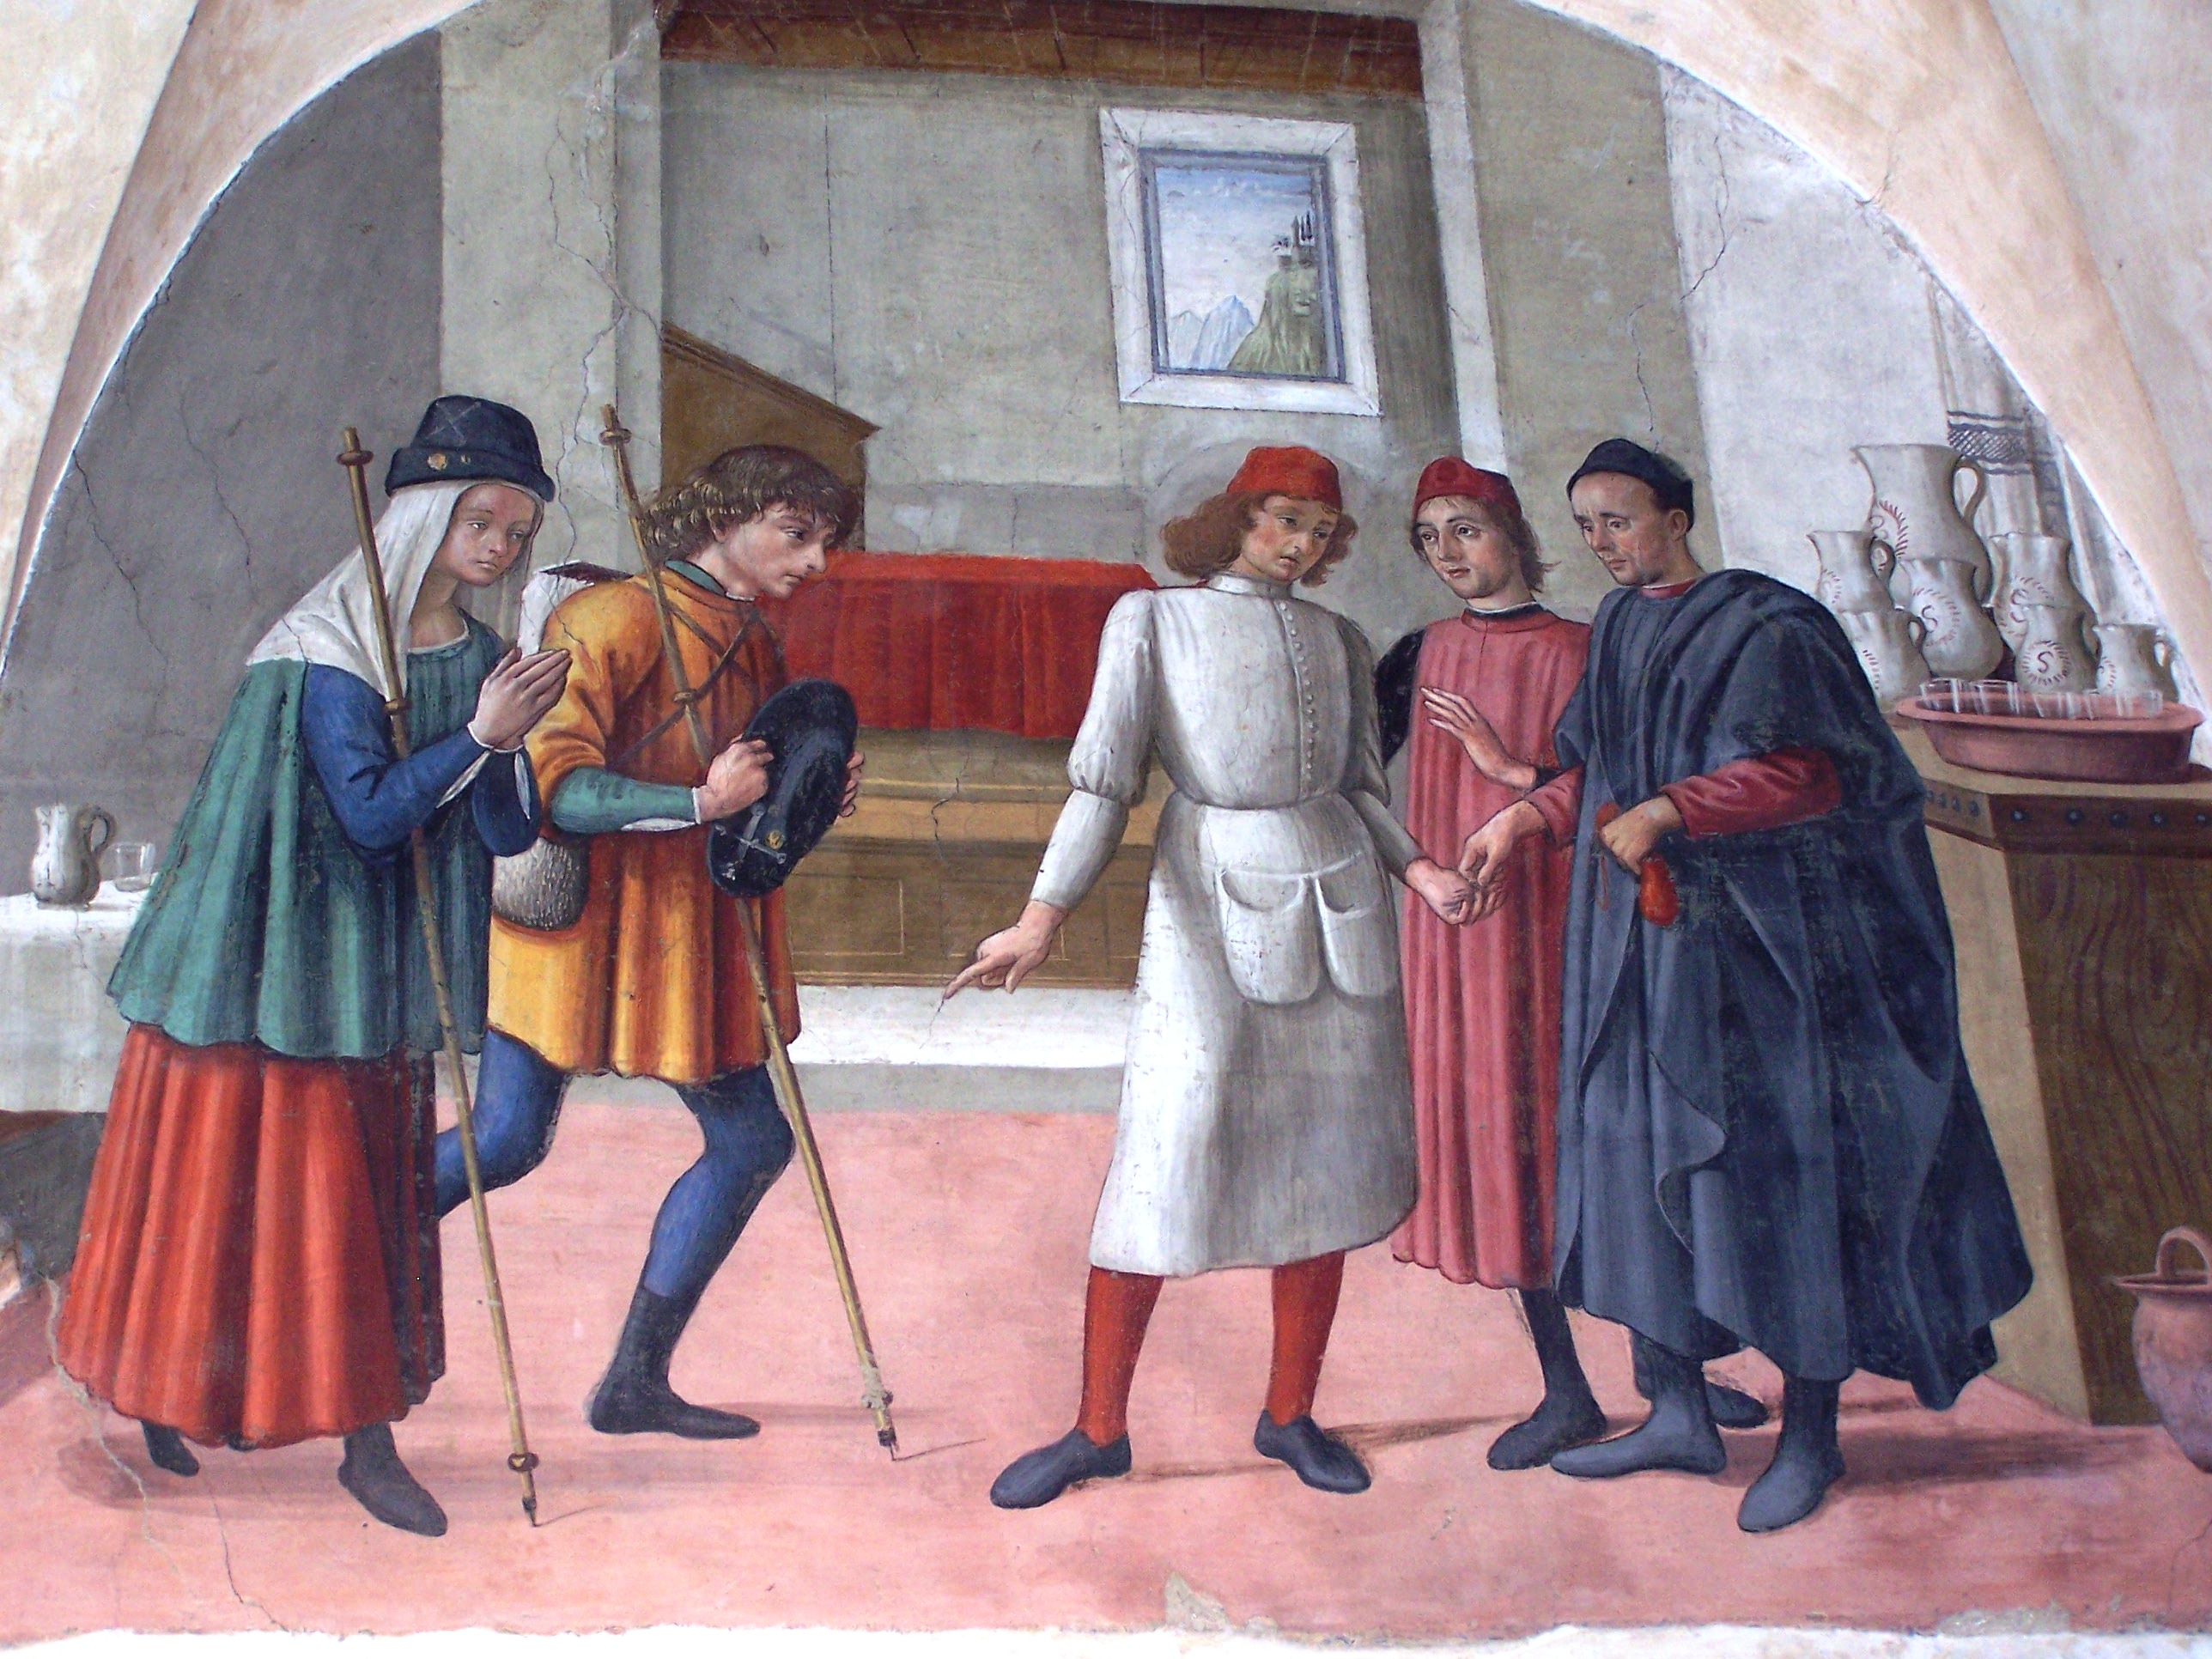 4 Colori Camicia Medievale larpl RICOSTRUZIONE STORICA 36" a 42" sul petto vecchio stock ridotto 